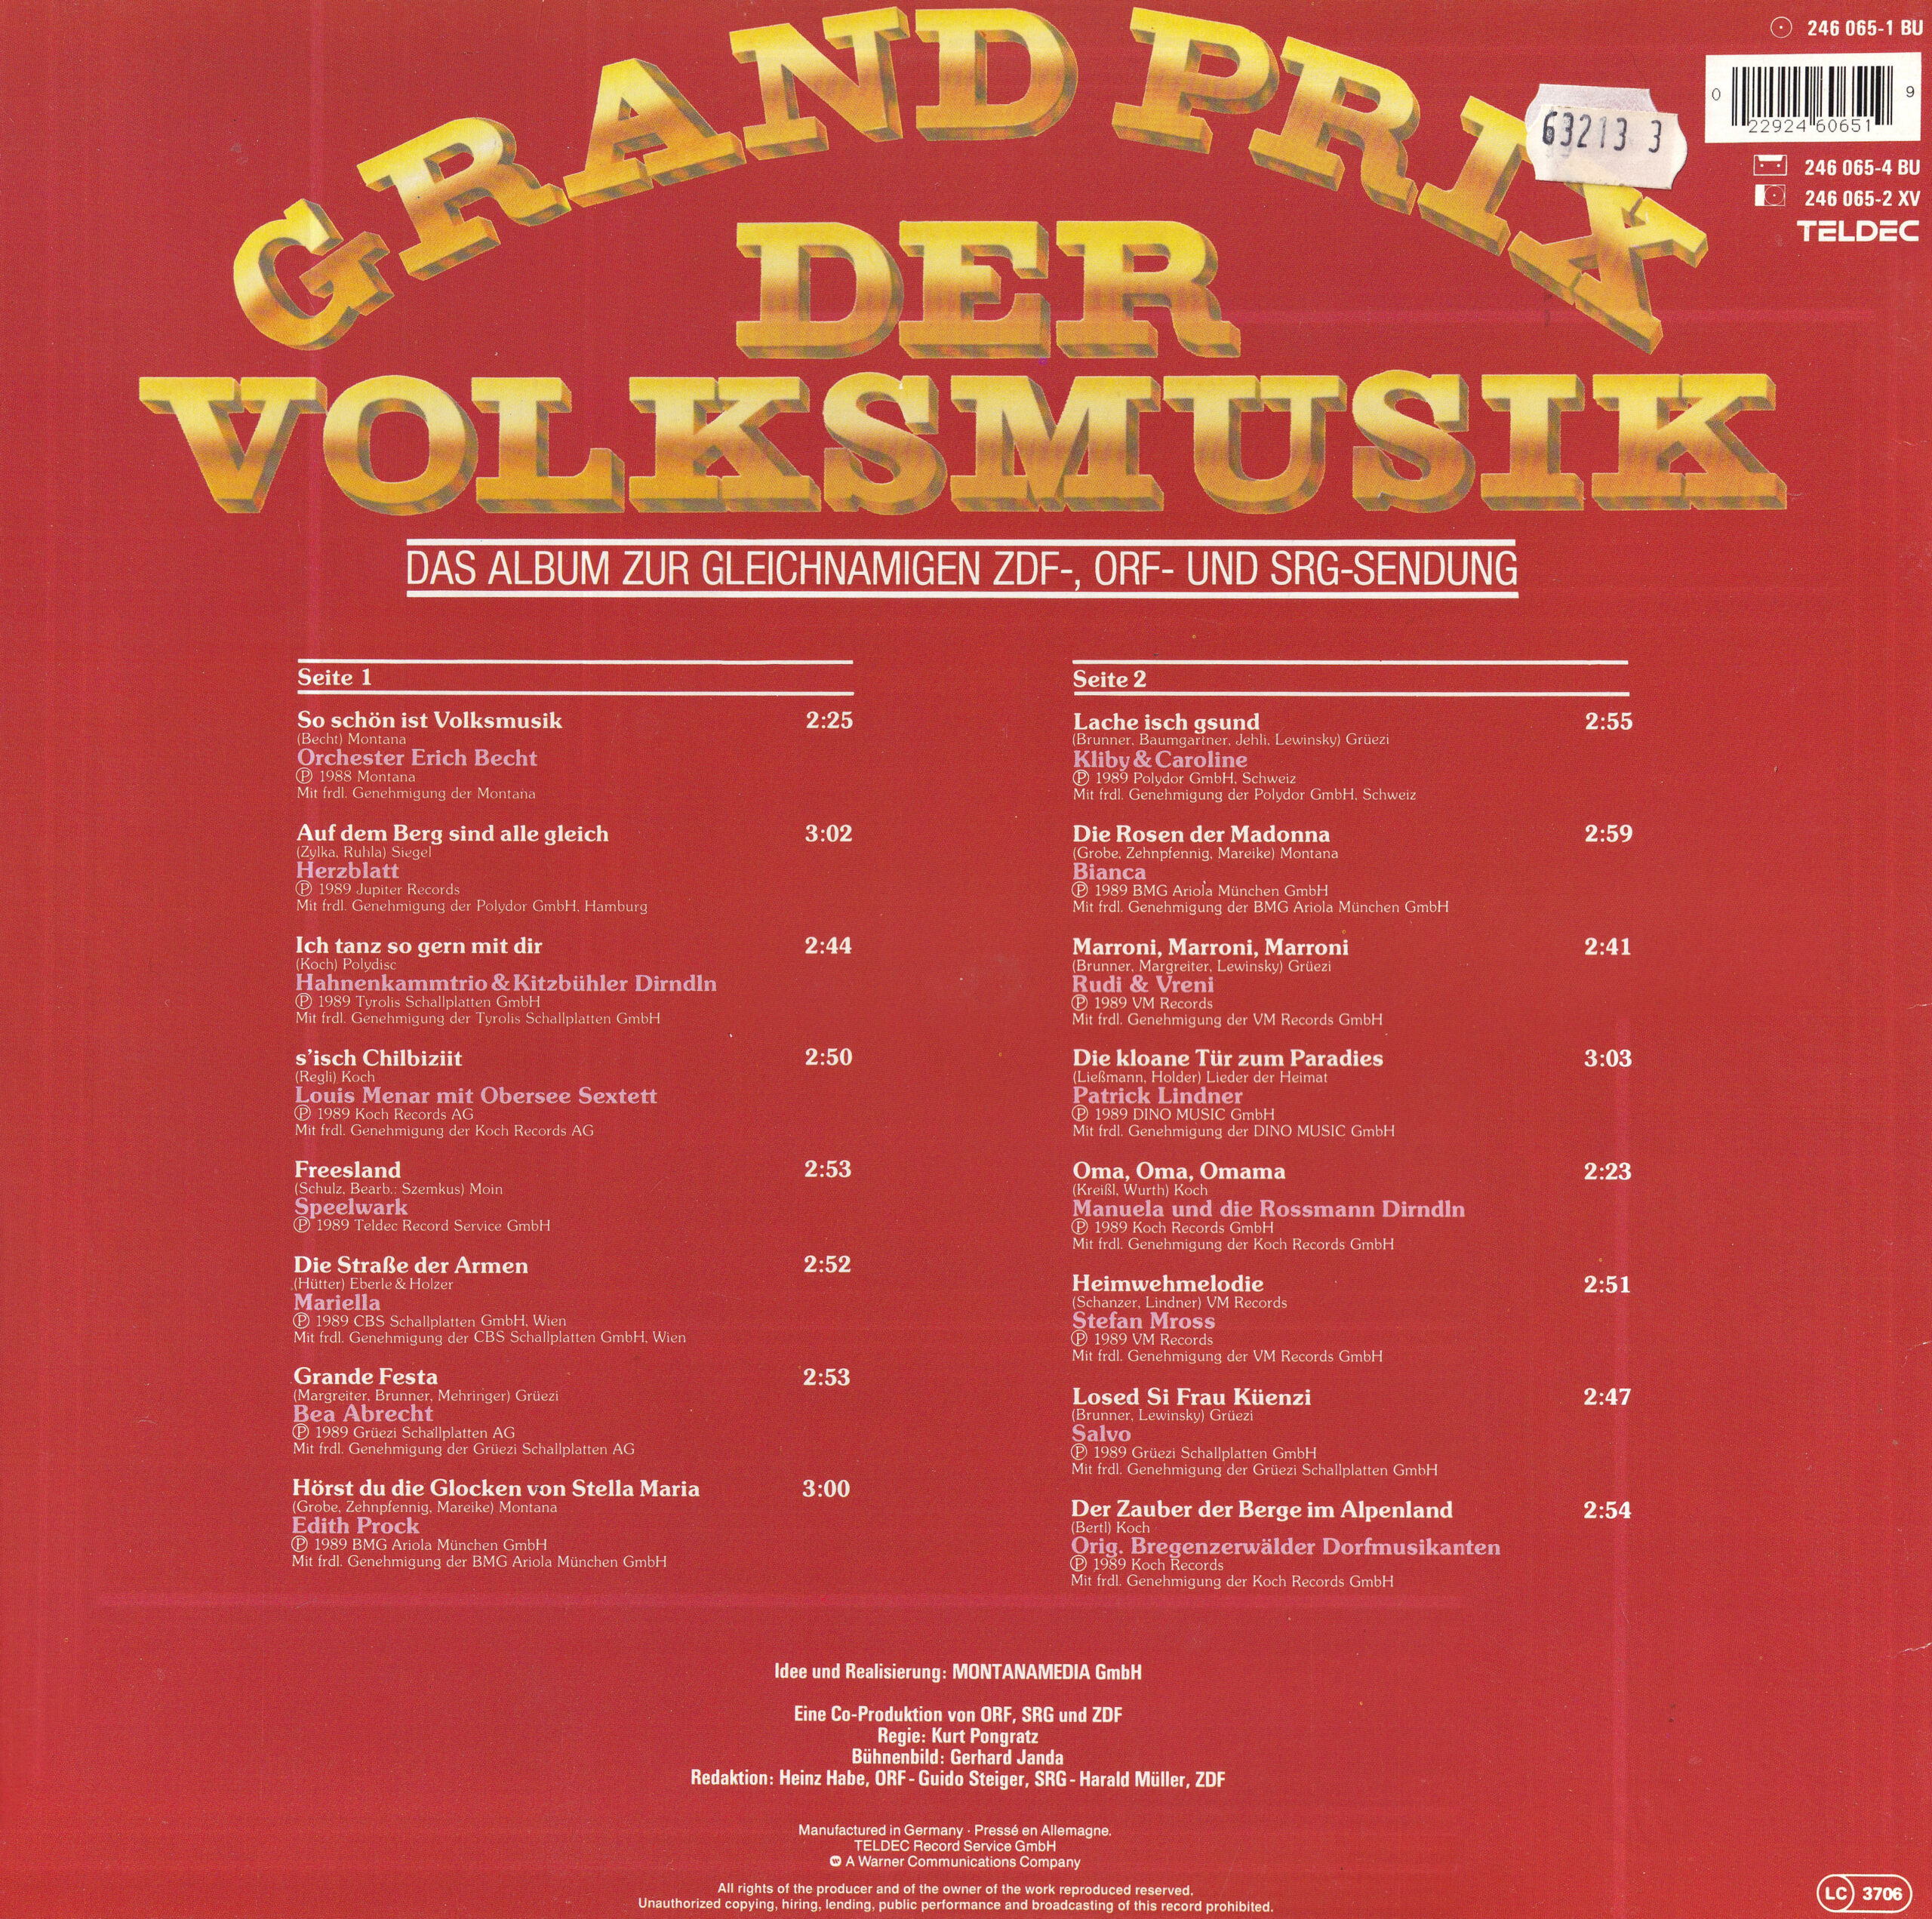 Grand Prix der Volksmusik 1989 – 2